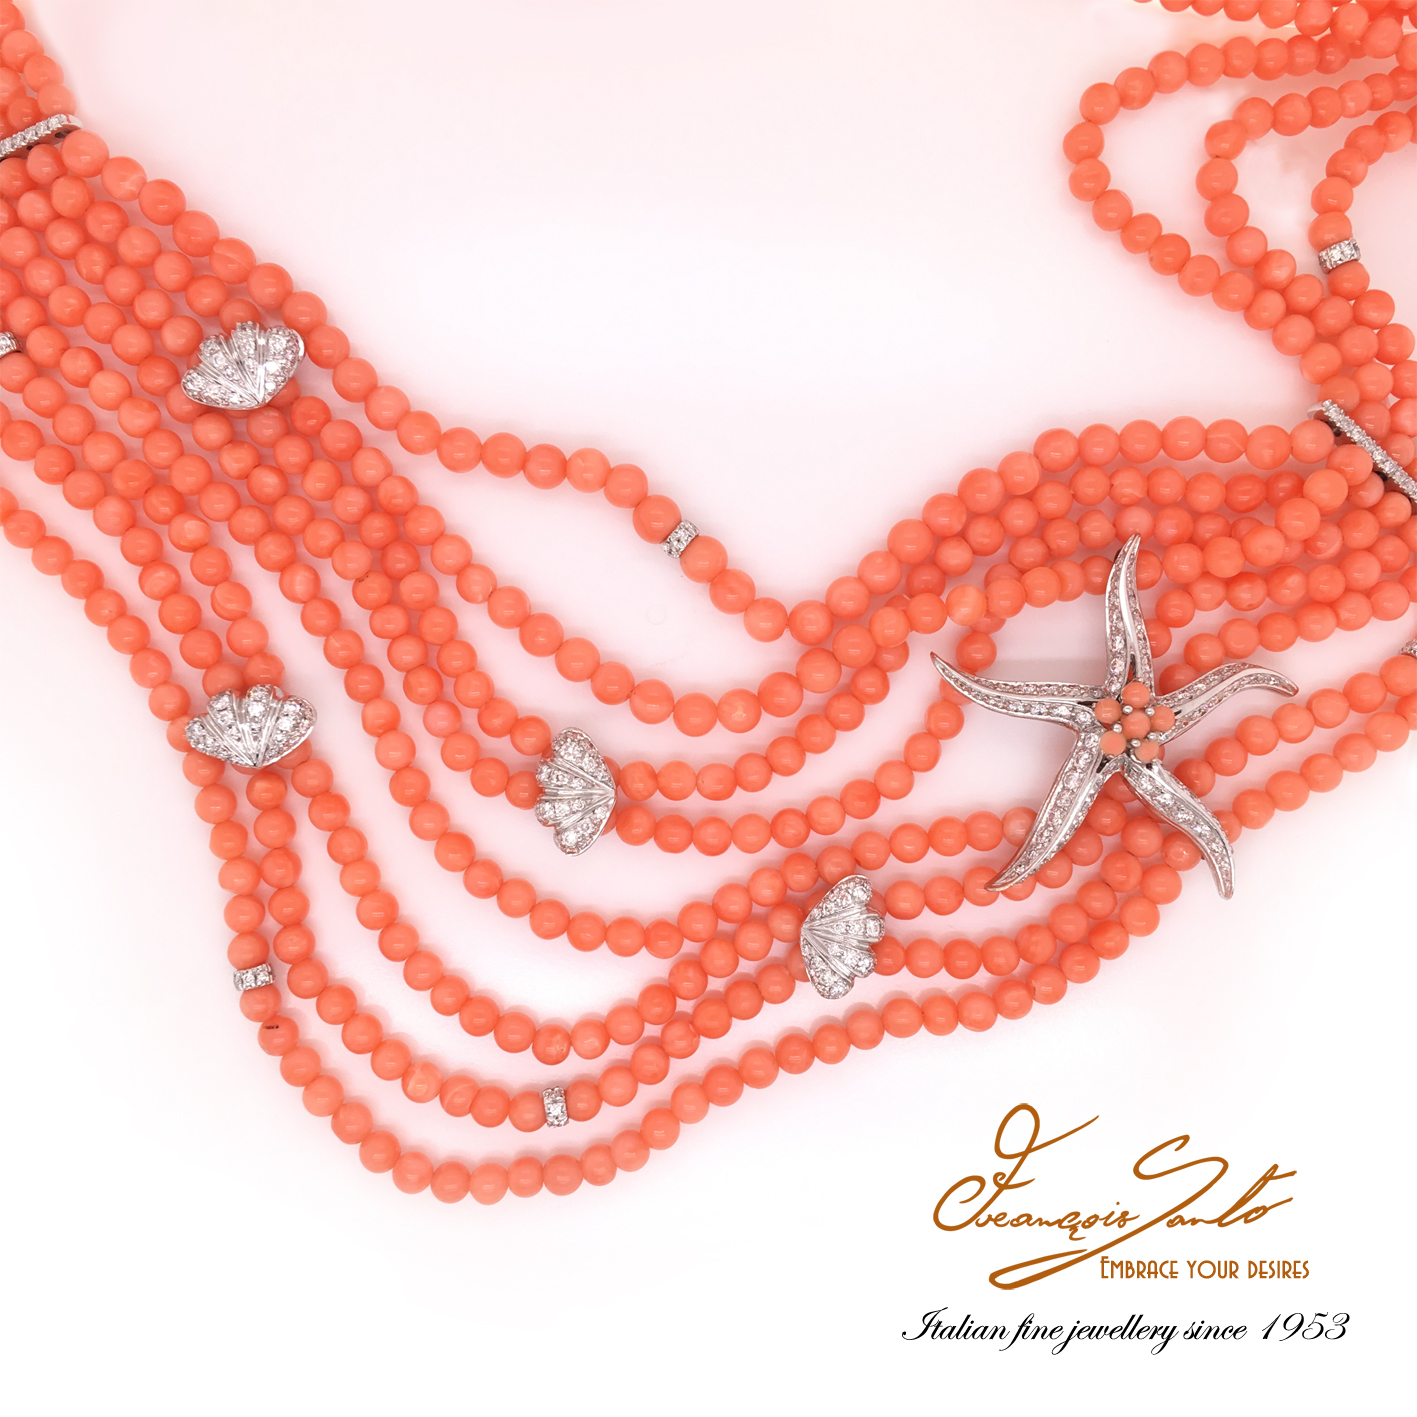 CAPRI Coral necklace item #166 - Embrace Your Desires